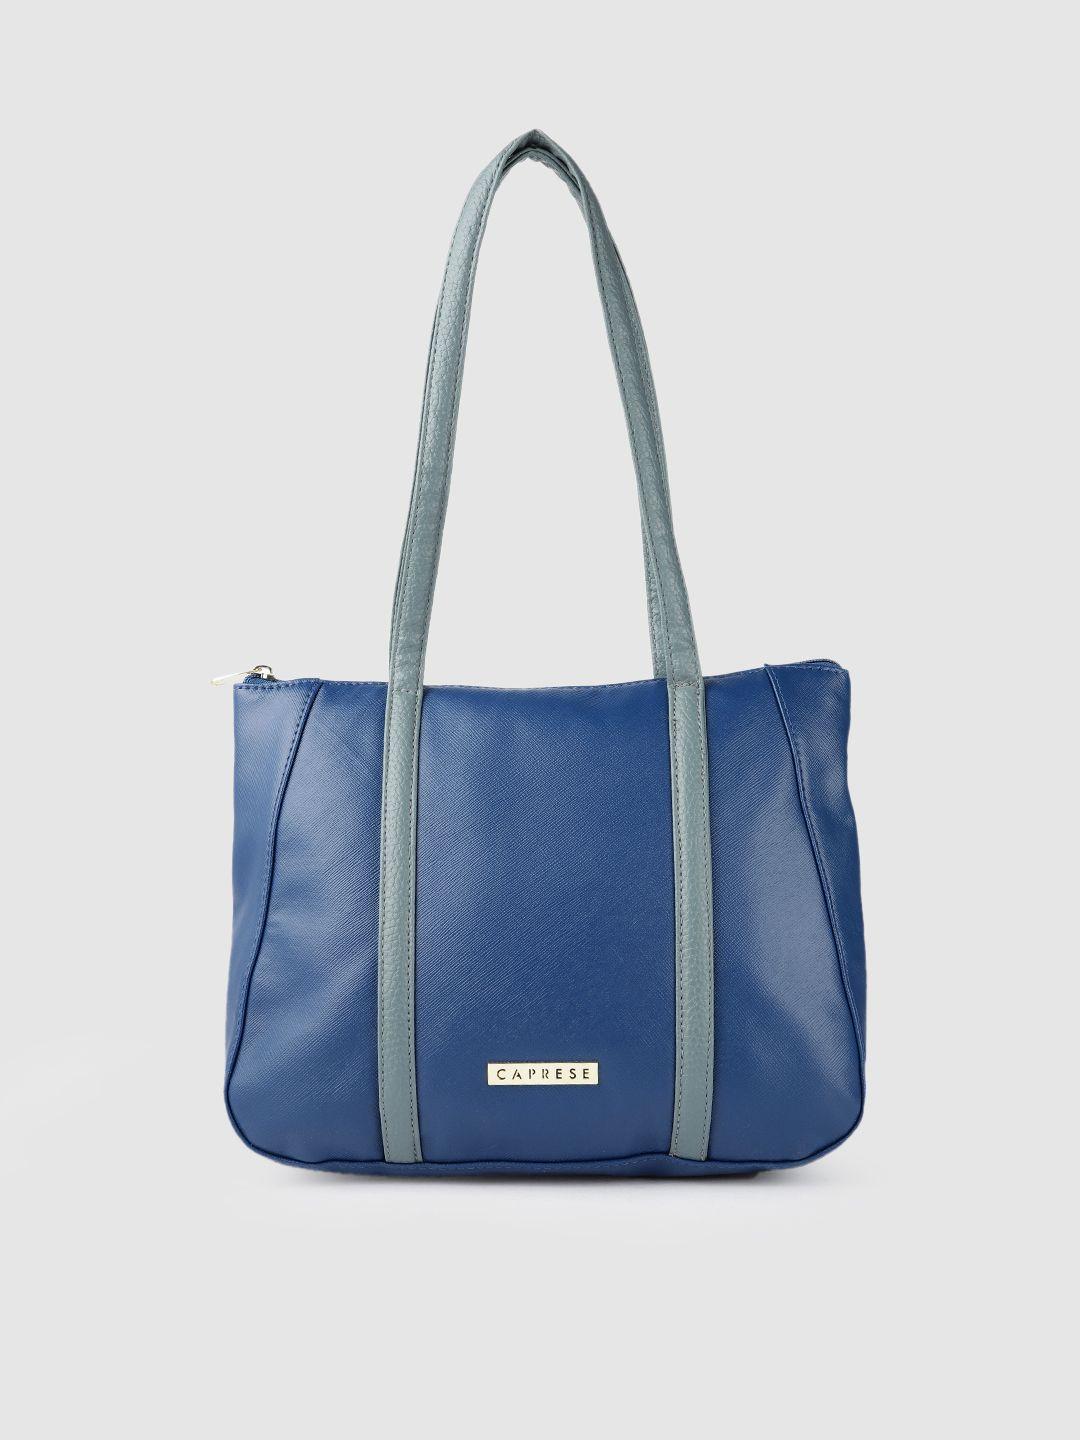 caprese blue pu structured shoulder bag